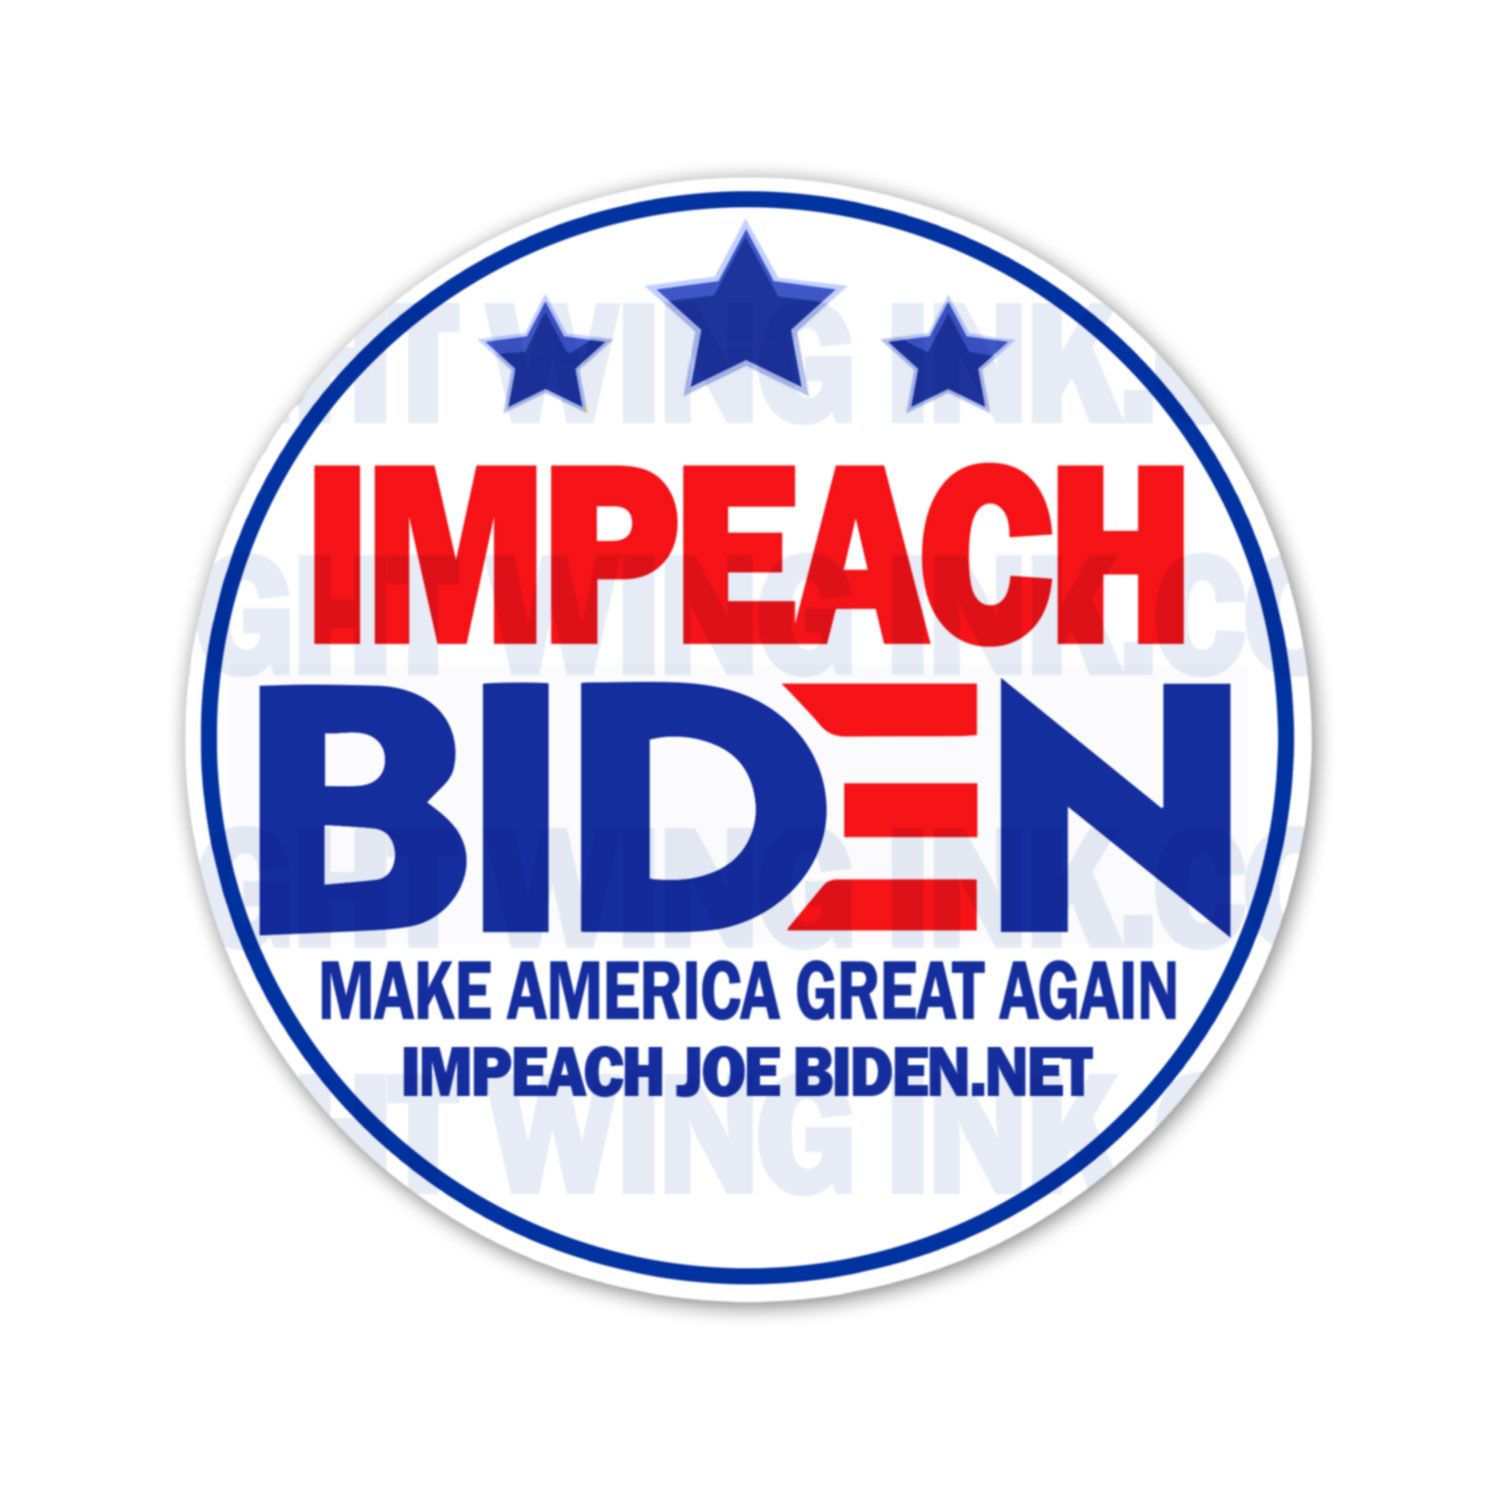 Impeach Joe Biden - Make America Great Again Stickers 2 Pack 2